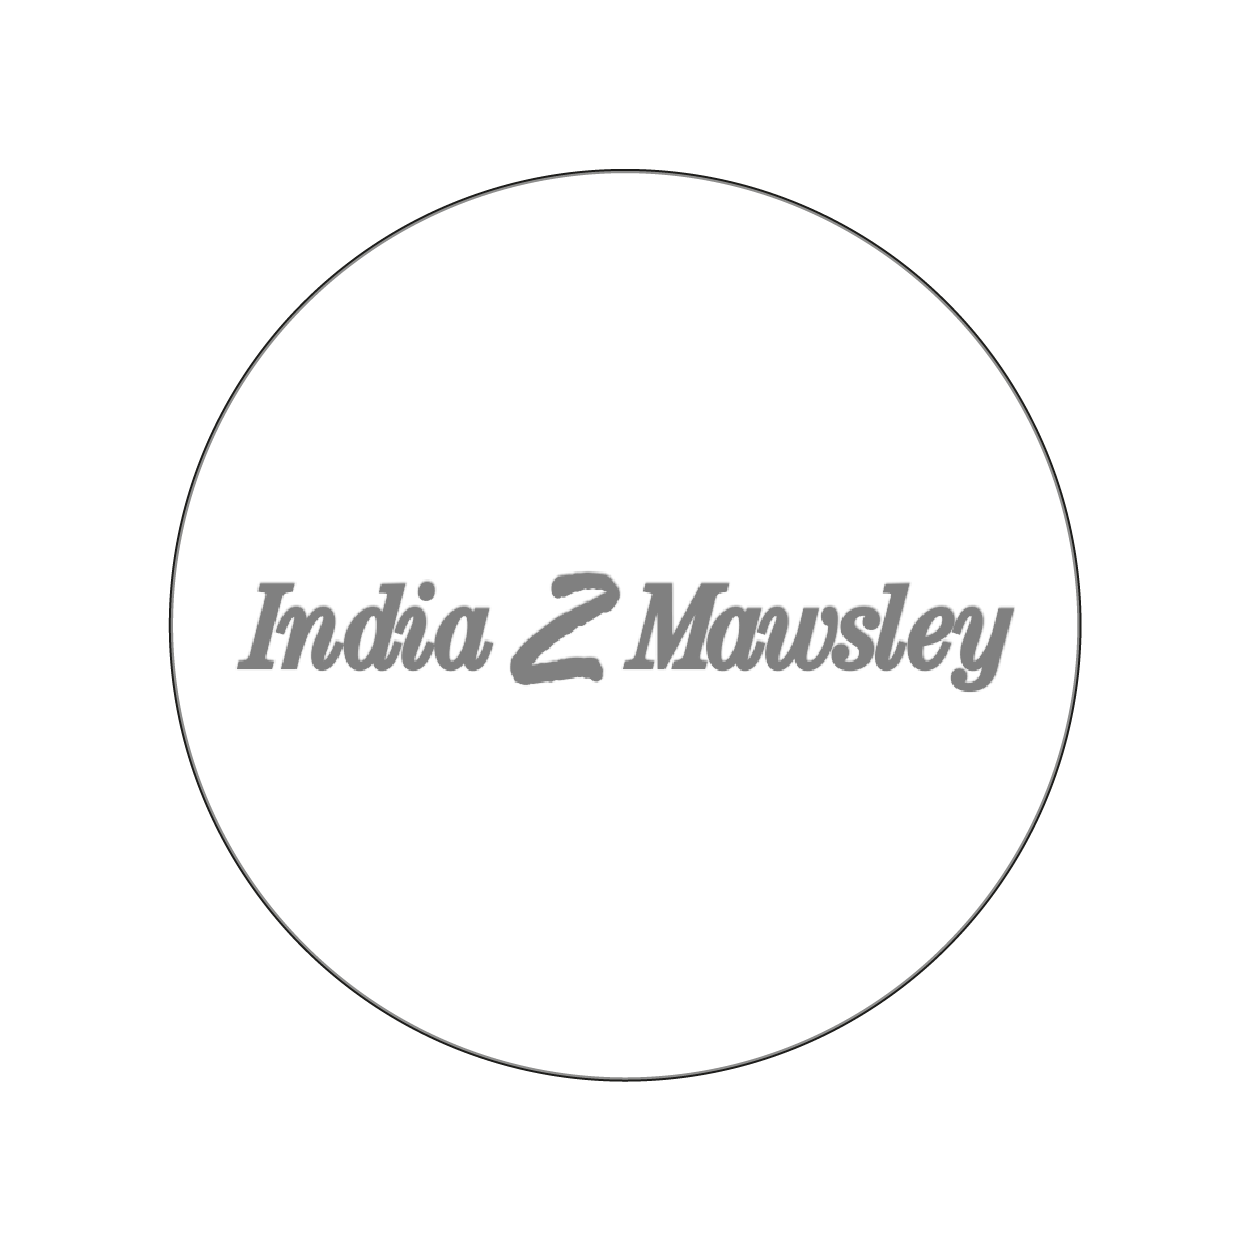 India 2 Mawsley